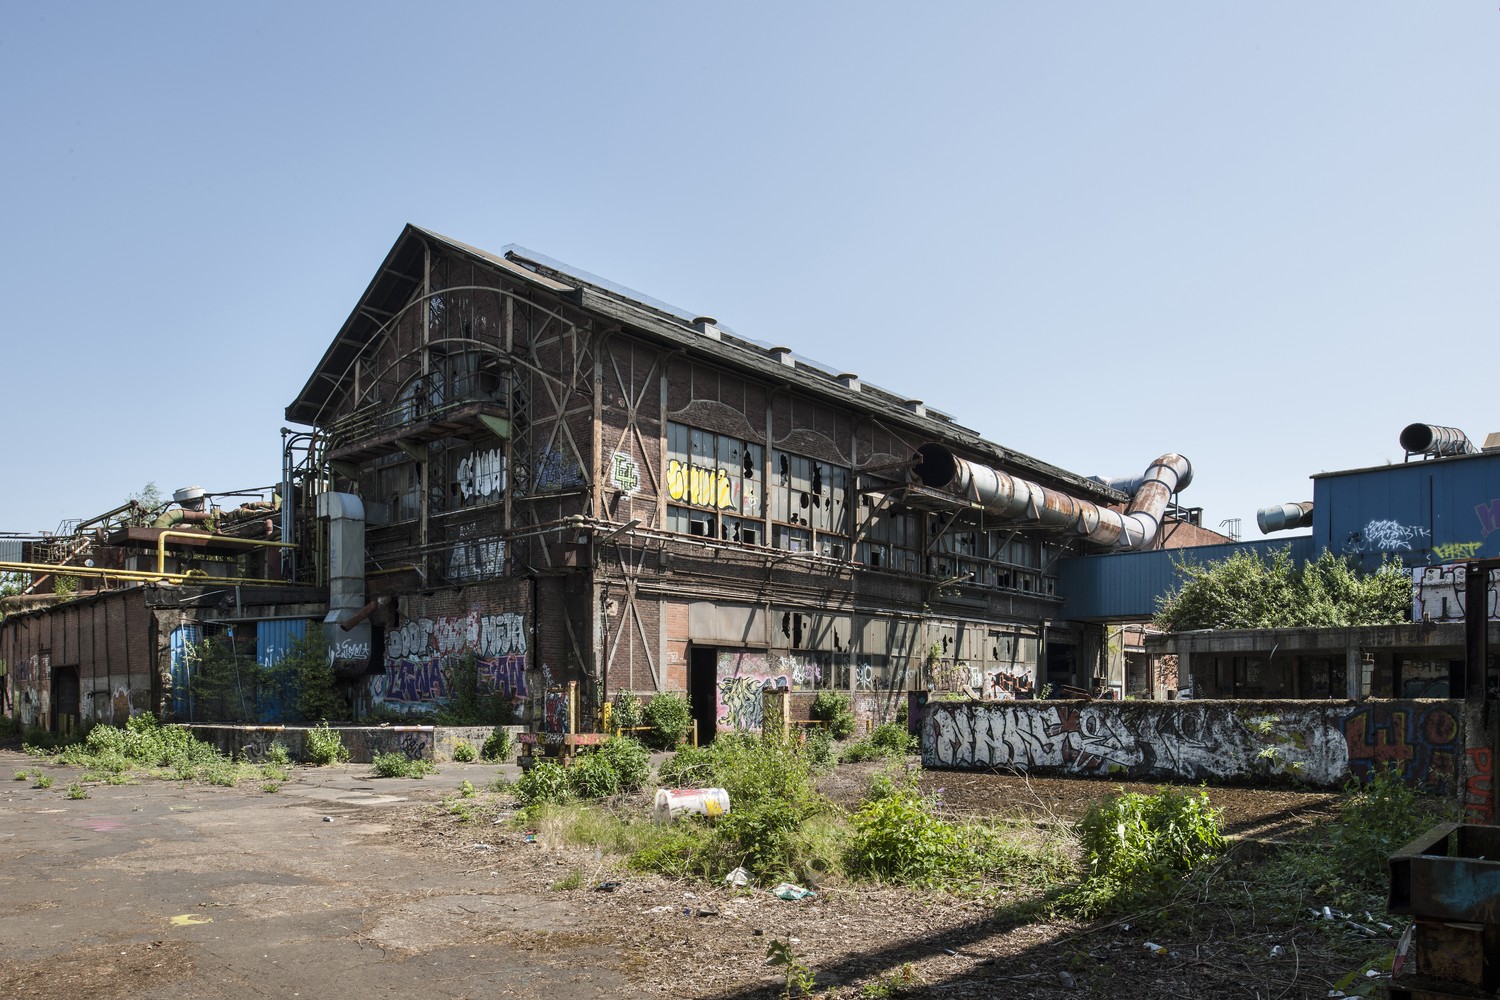 Leerstehendes Fabrikgebäude, mit Graffitis besprüht und von wildem Pflanzenwuchs umgeben.